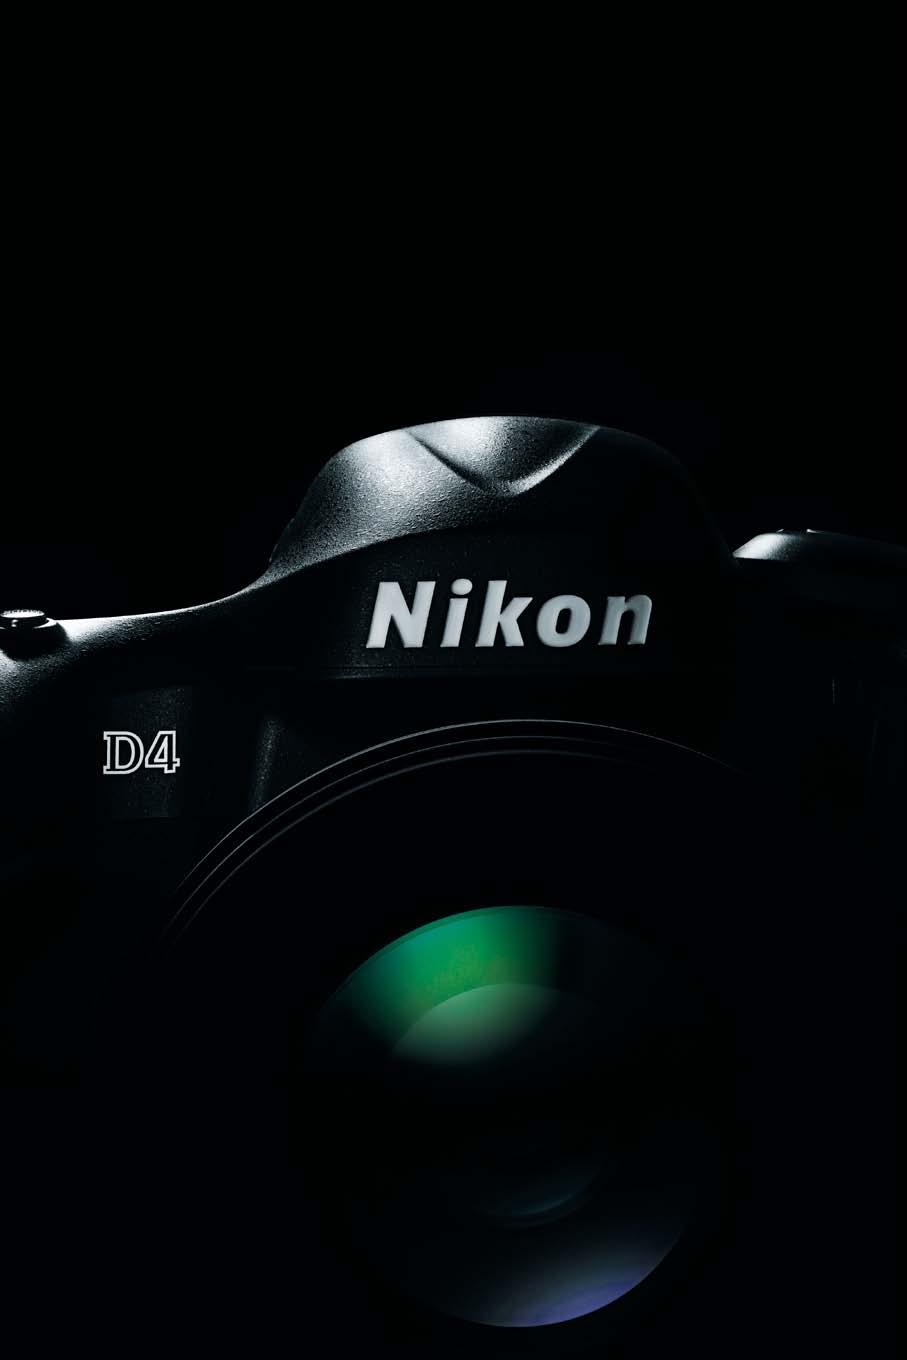 니콘 D4 주요사양 형식 렌즈교환식일안리플렉스타입디지털카메라 렌즈마운트 니콘 F 마운트 (AF 커플링, AF 접점포함 ) 유효화소수 16.2 메가픽셀 촬상소자방식 36.0 23.9mm 사이즈 CMOS 센서, 니콘 FX 포맷 총화소수 16.